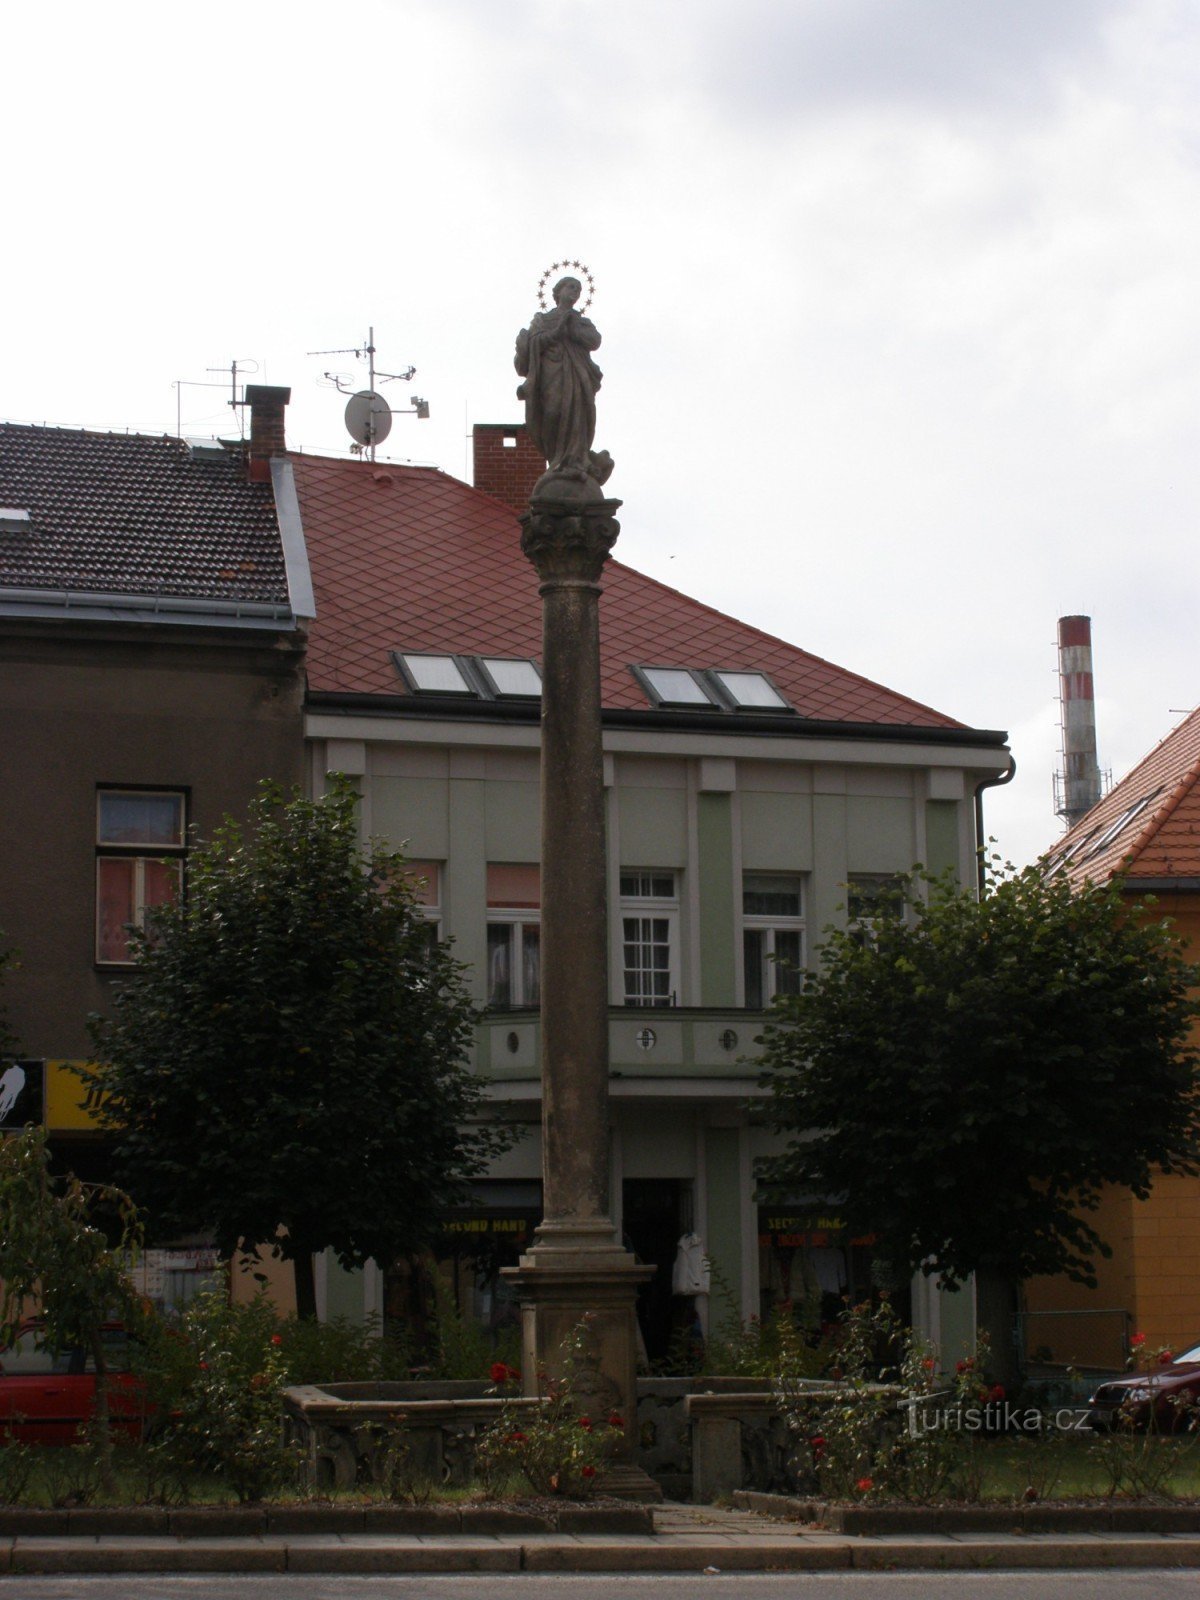 Vamberk - Husovo náměstí, một bộ tượng đài